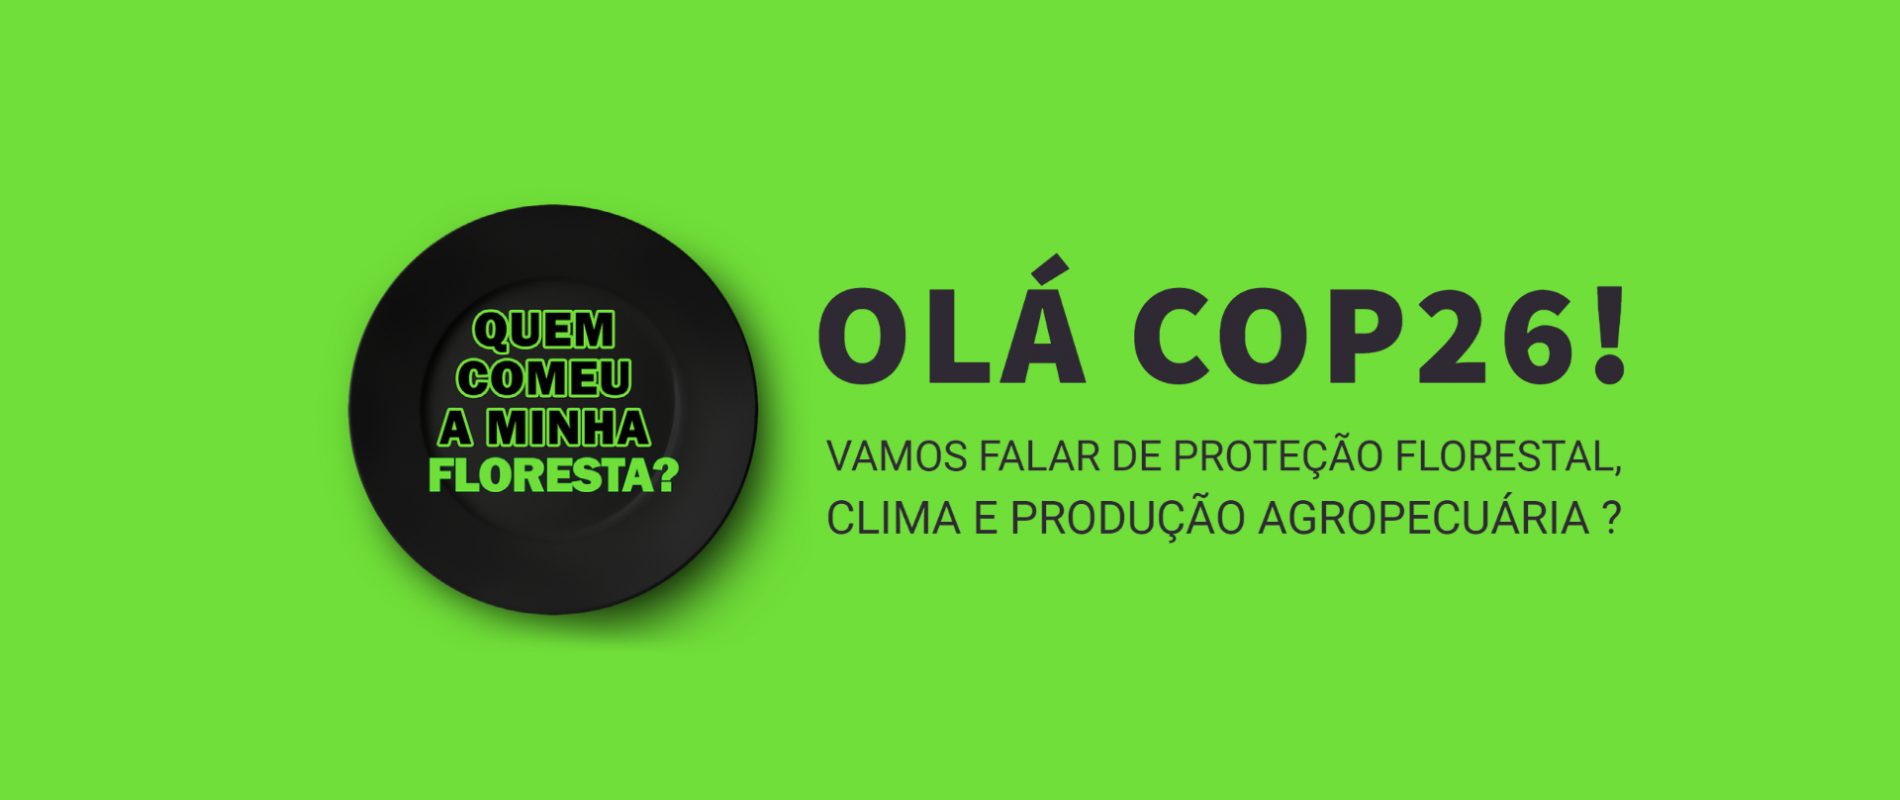 who ate_brasil Ola_Cop_EN tw Copy (4)